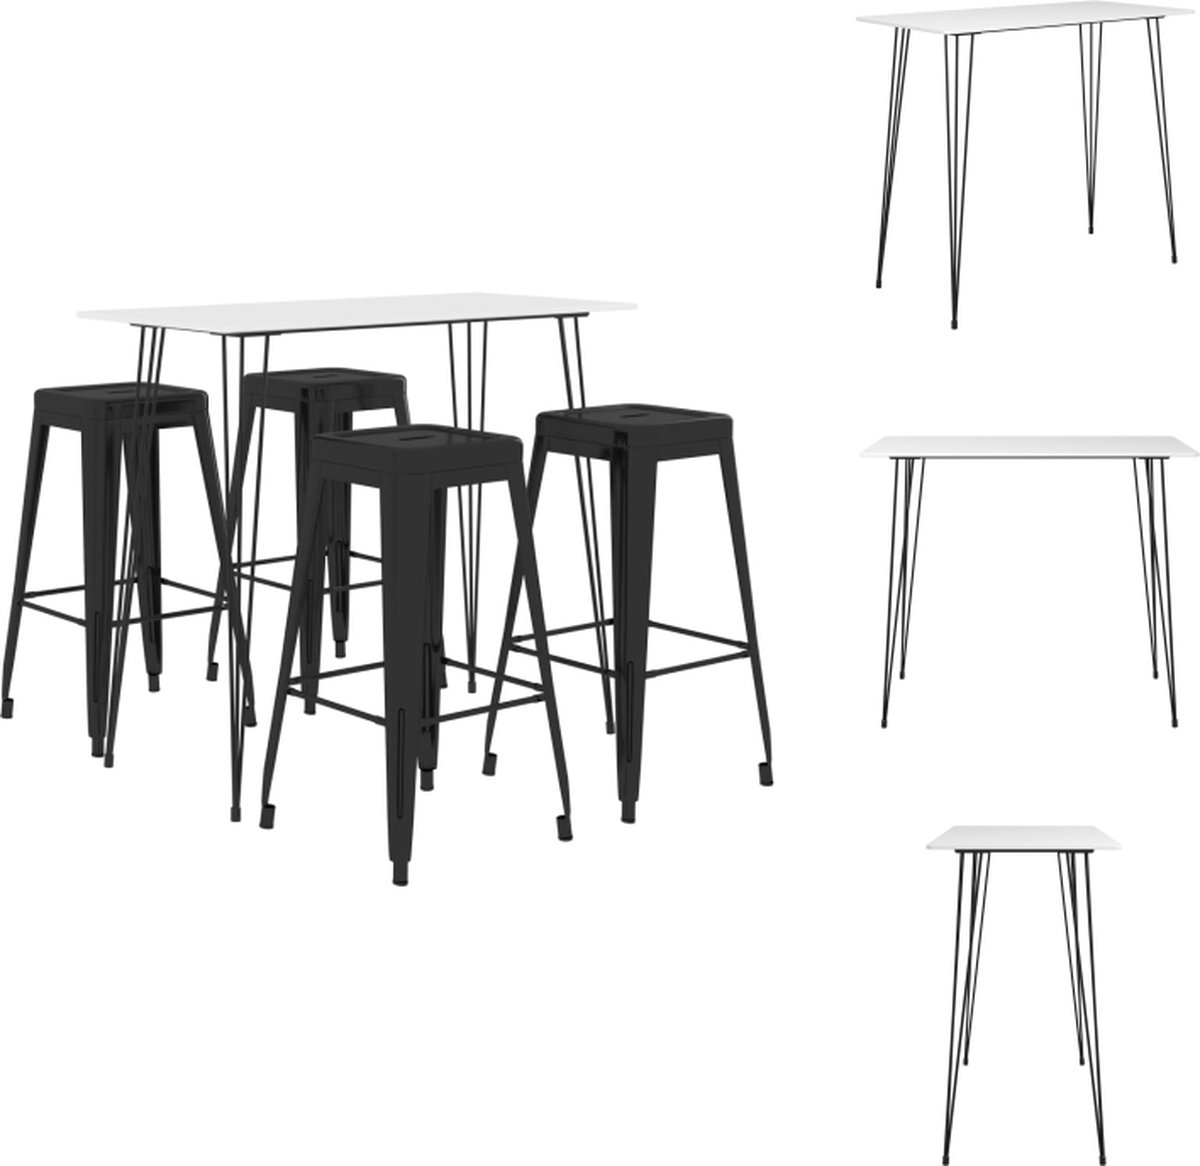 VidaXL Bartafel en 4 barkrukken Wit MDF en metaal Tafel- 120x60x105 cm Krukken- 43x43x77 cm Stapelbaar Set tafel en stoelen